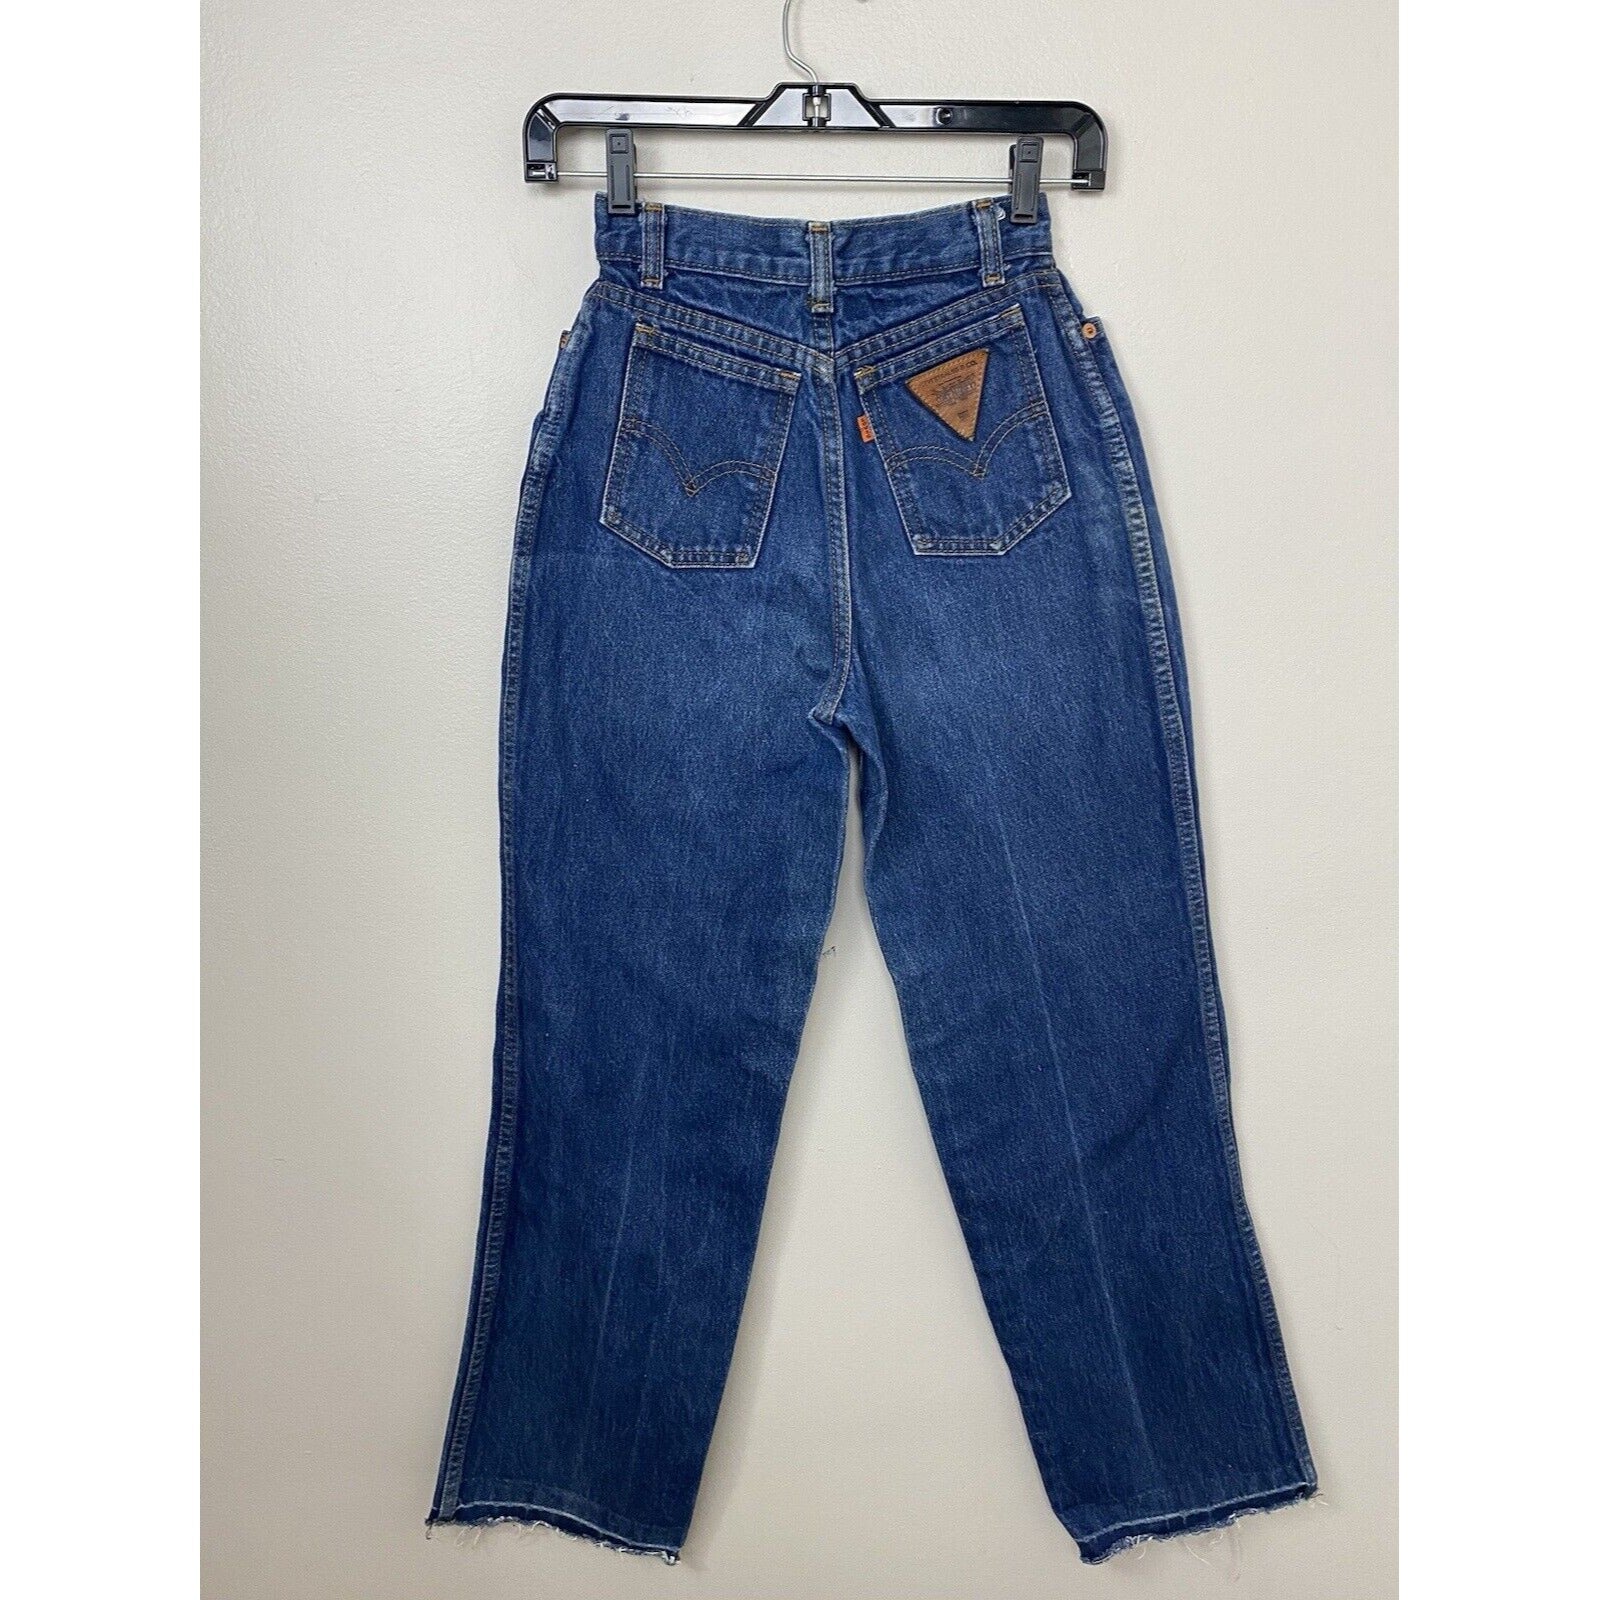 1970s Levi's Blue Jeans, Orange Tab, Triangle Leather Patch, 22x29, Hi –  Proveaux Vintage